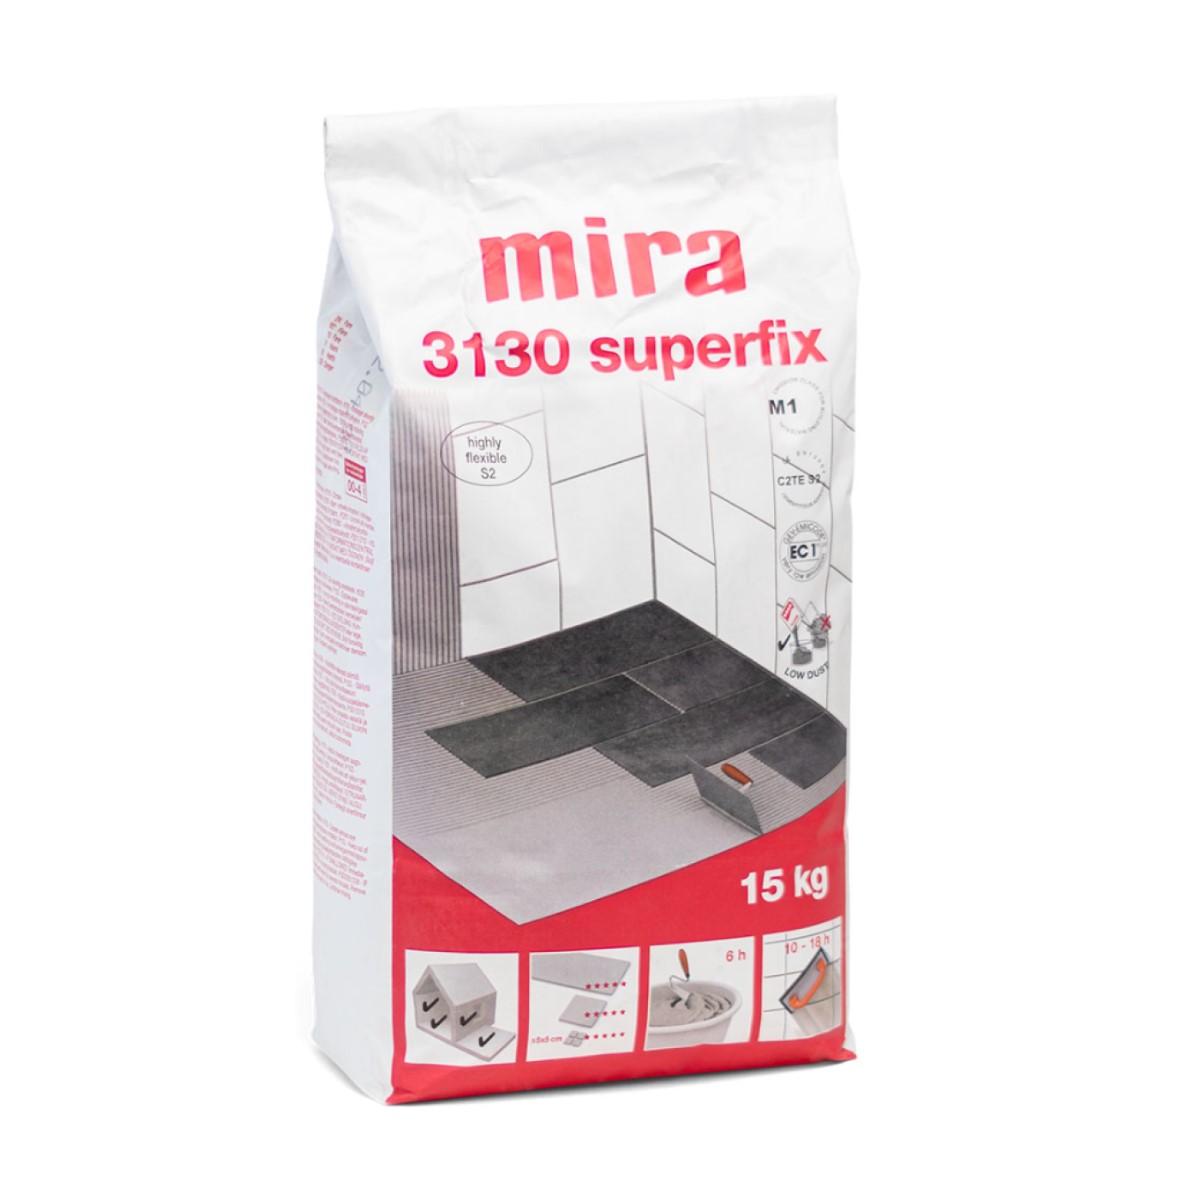 Mira 3130 superfix flīžu līme ar izcilu adhēziju, elastību (C2TE S2), 15kg